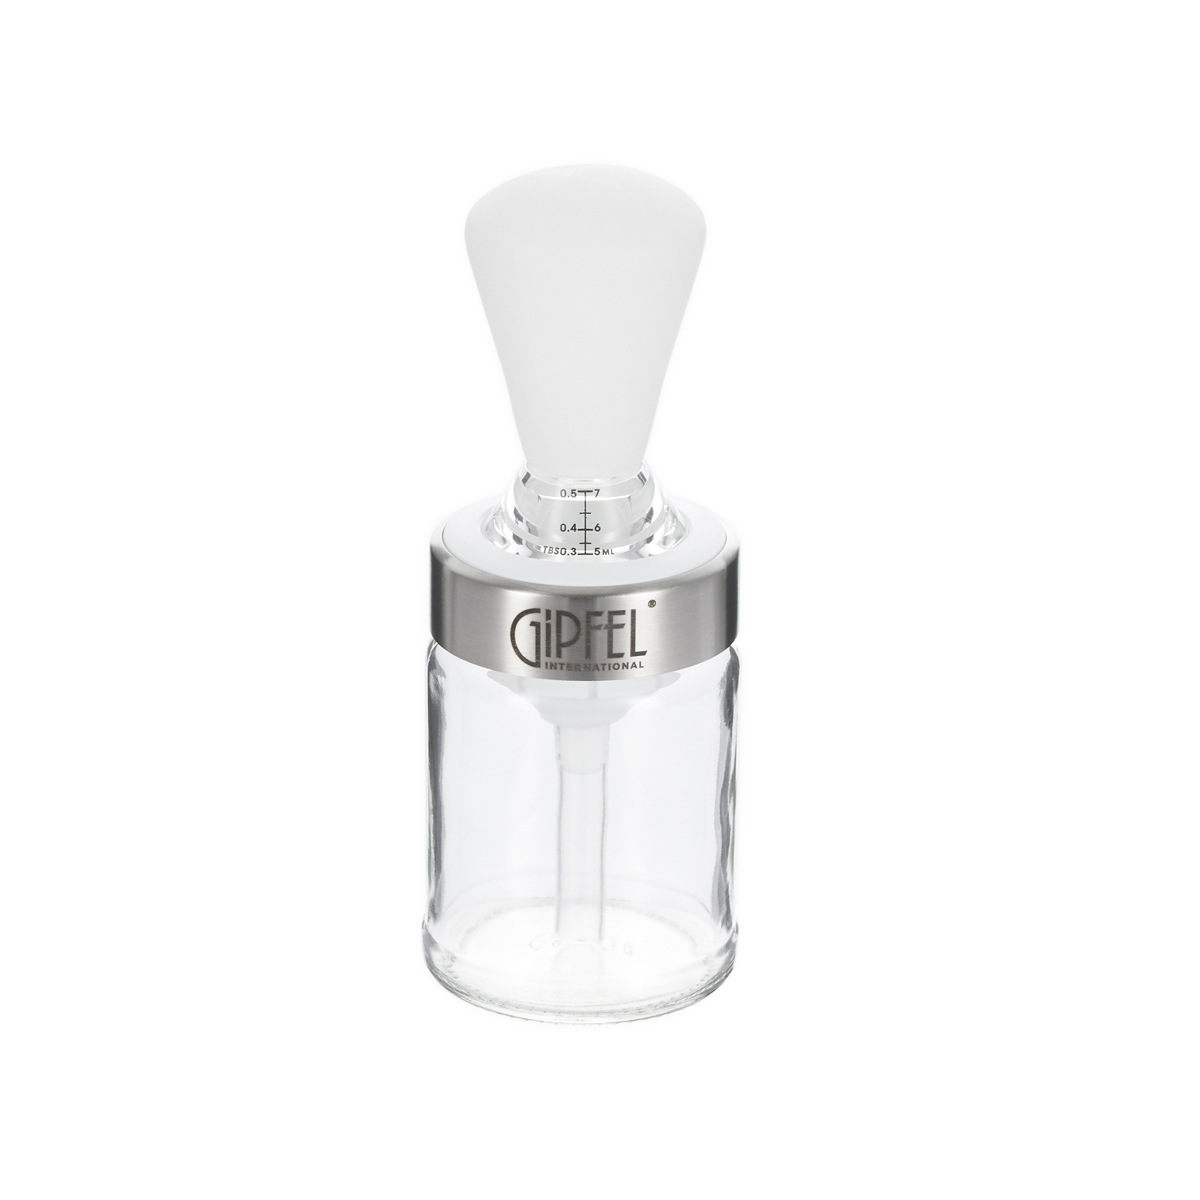 Кисточка вакуумная для масла со стеклянным контейнером GIPFEL 50700, цвет белый